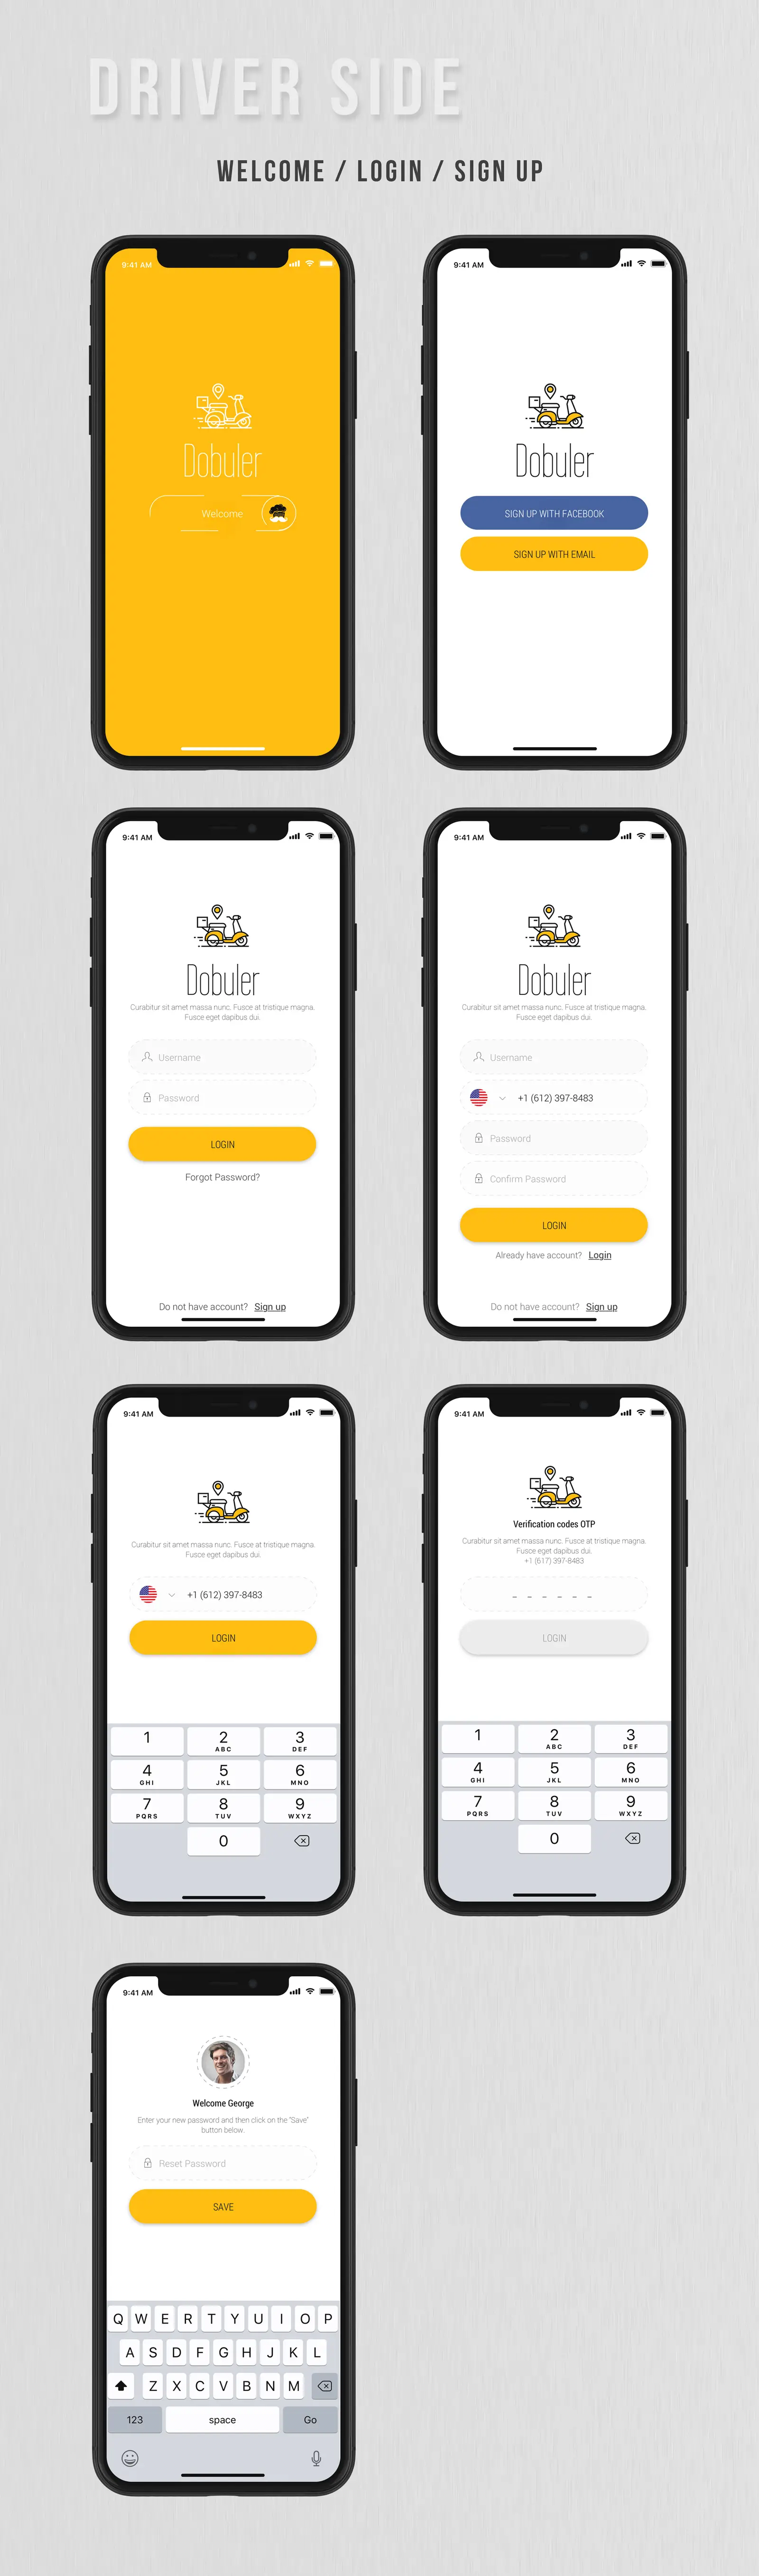 Dobule - Food Delivery UI Kit for Mobile App - 17